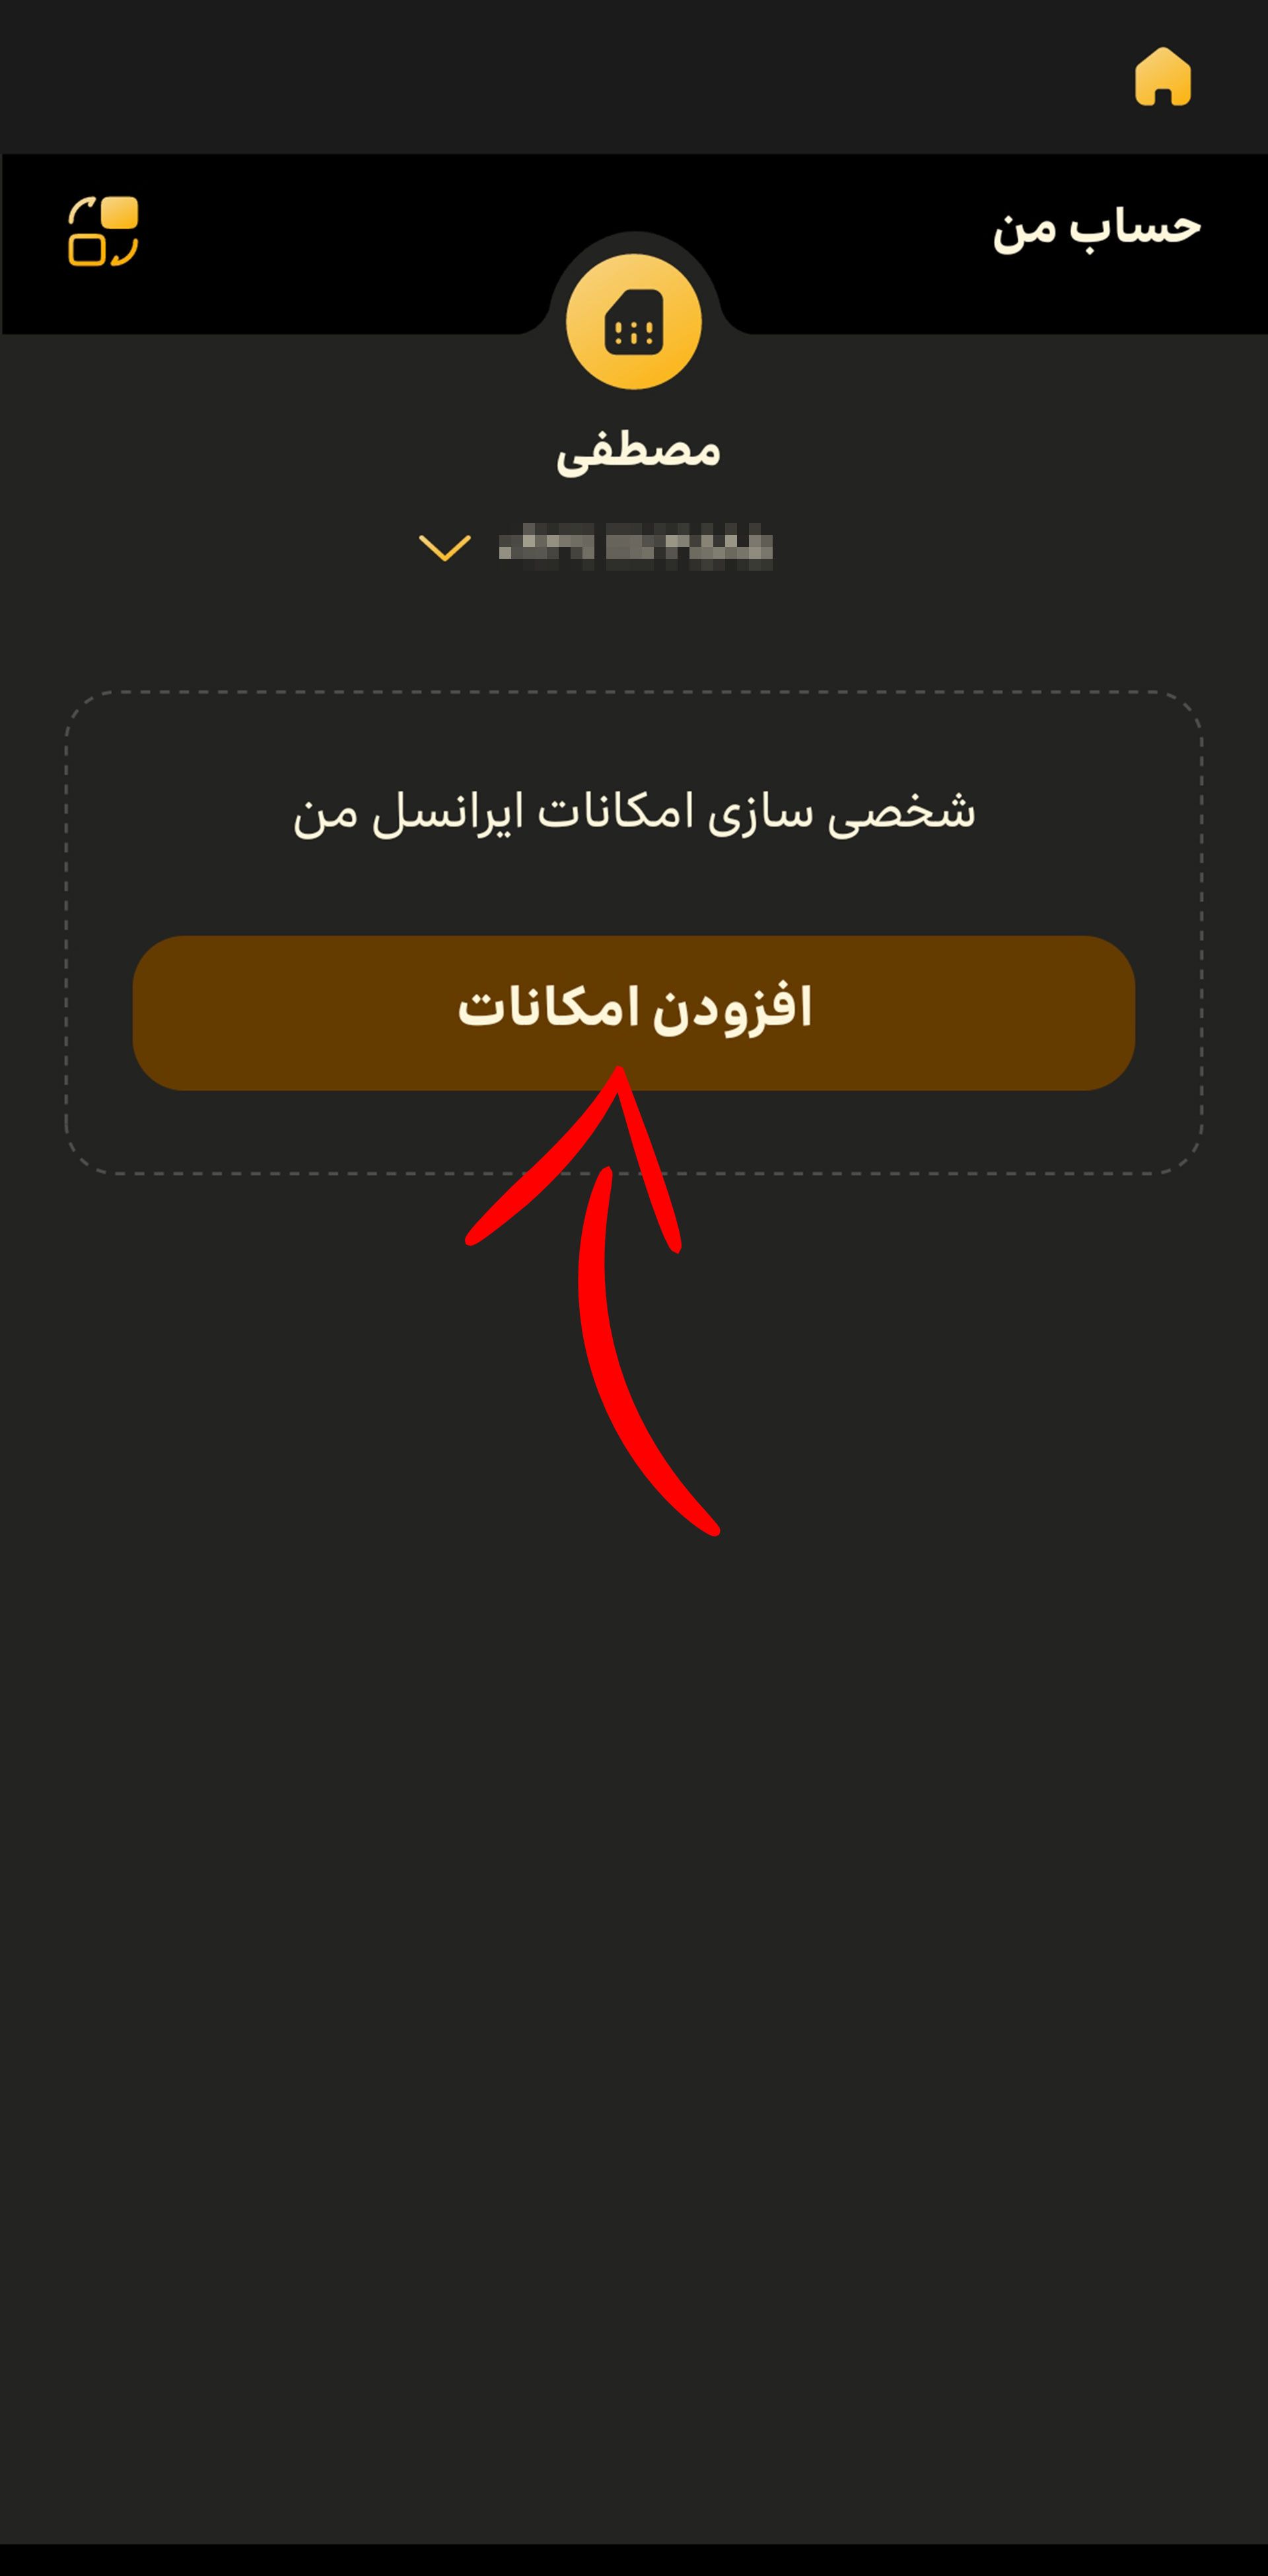 صفحه حساب من در ایرانسل من و فلش روی گزینه افزودن امکانات